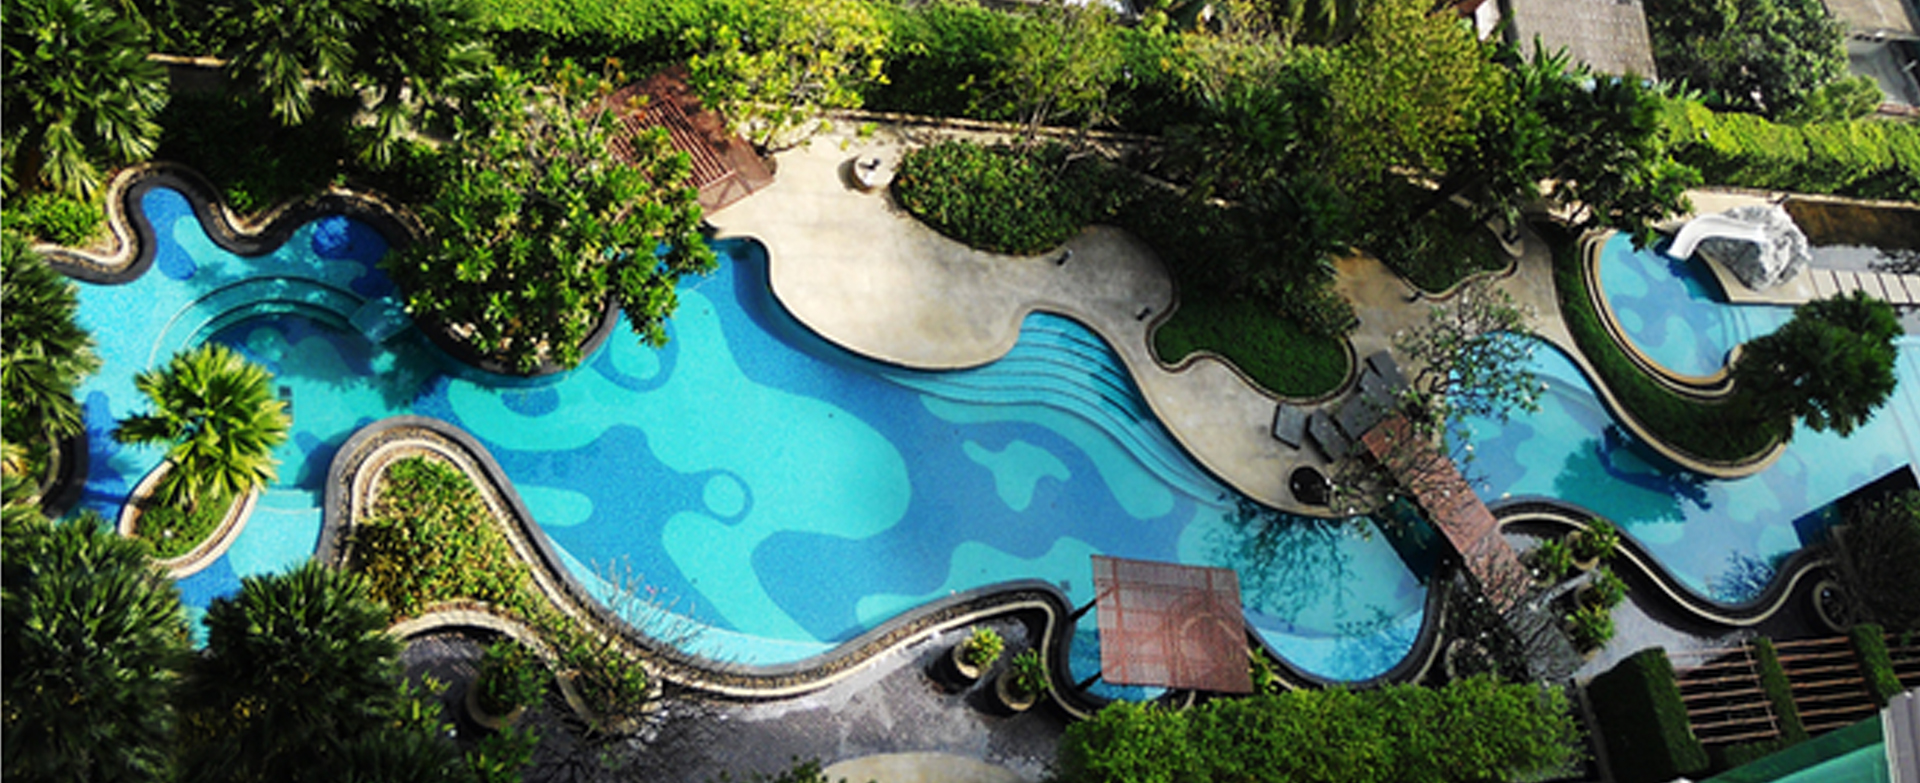 Các loại gạch mosaic hồ bơi dùng để ốp cho bể bơi